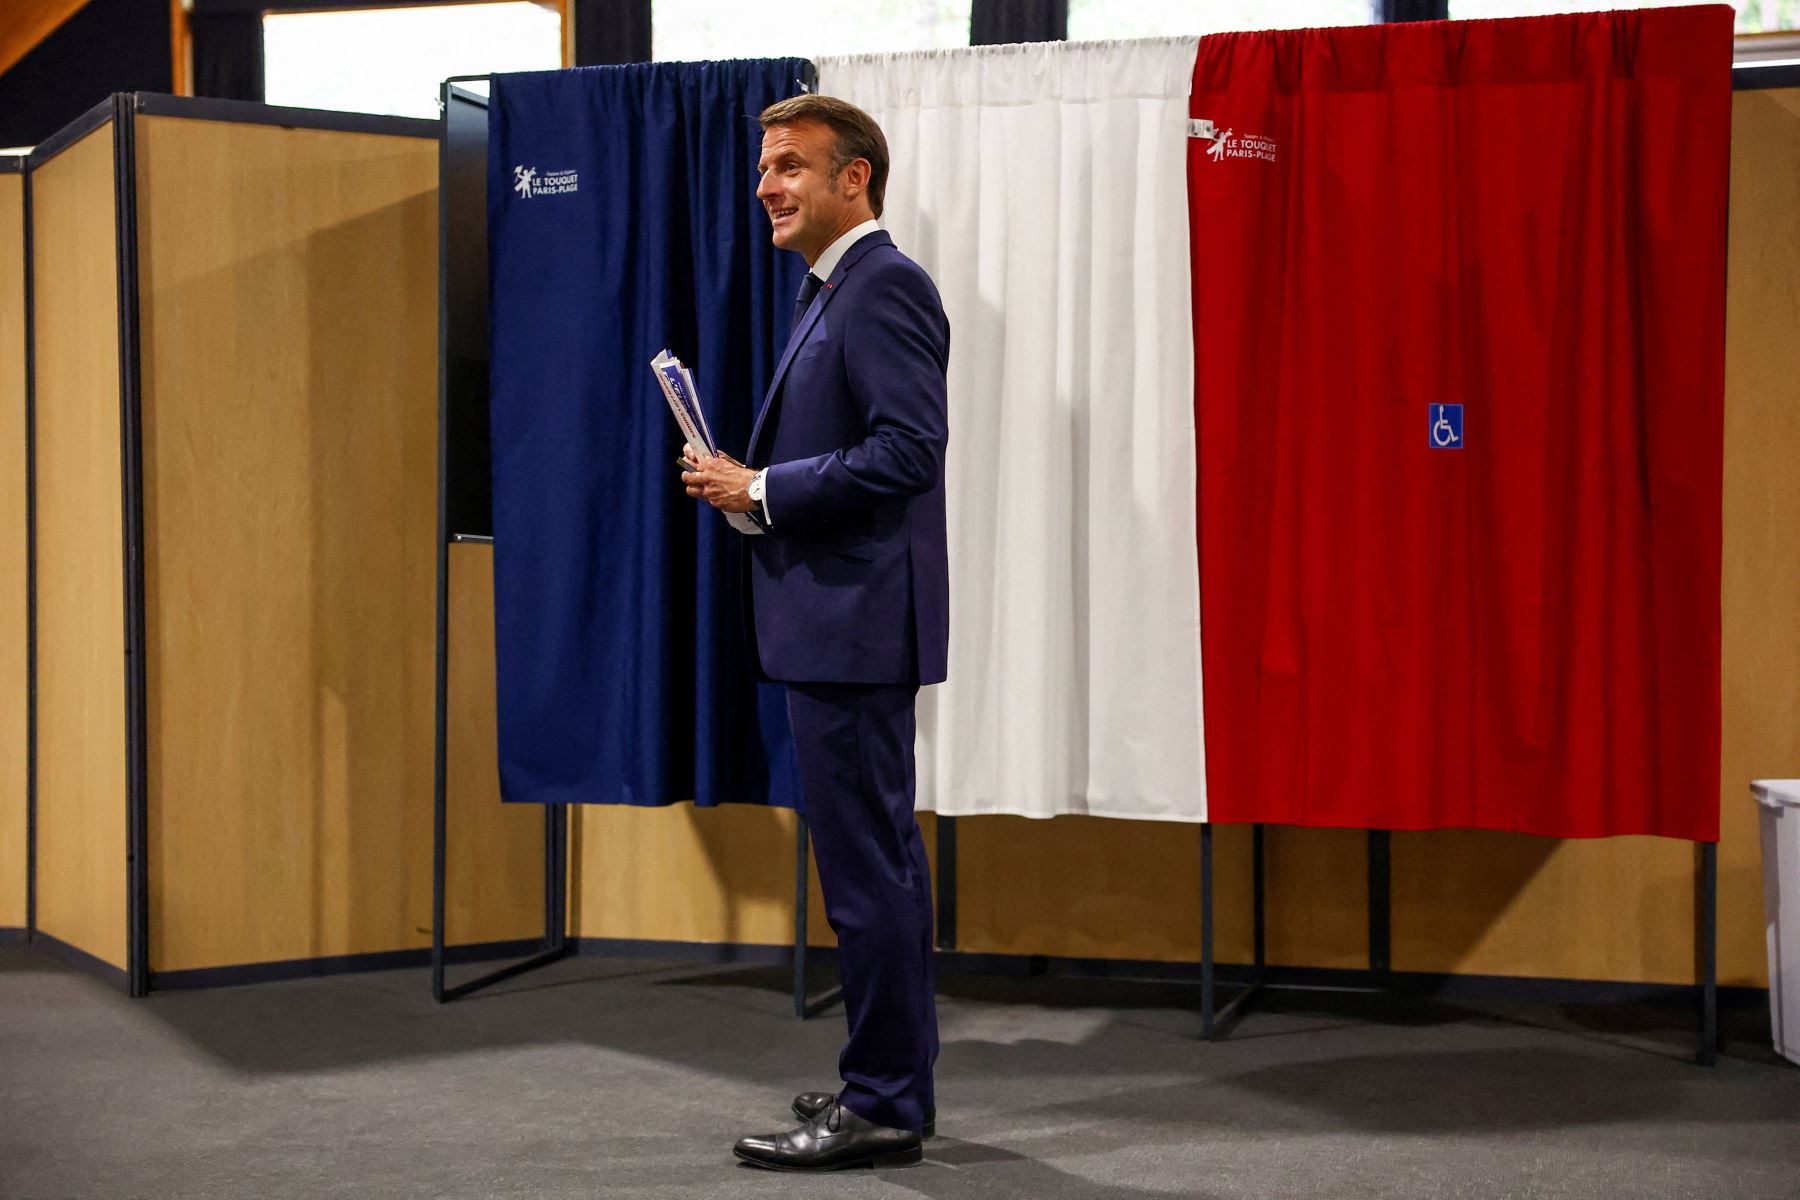 El presidente de Francia, Emmanuel Macron, se encuentra frente a una cabina electoral, adornada con cortinas que muestran los colores de la bandera de Francia, antes de emitir su voto para las elecciones al Parlamento Europeo en un colegio electoral en Le Touquet, al norte de Francia.
Foto: AFP